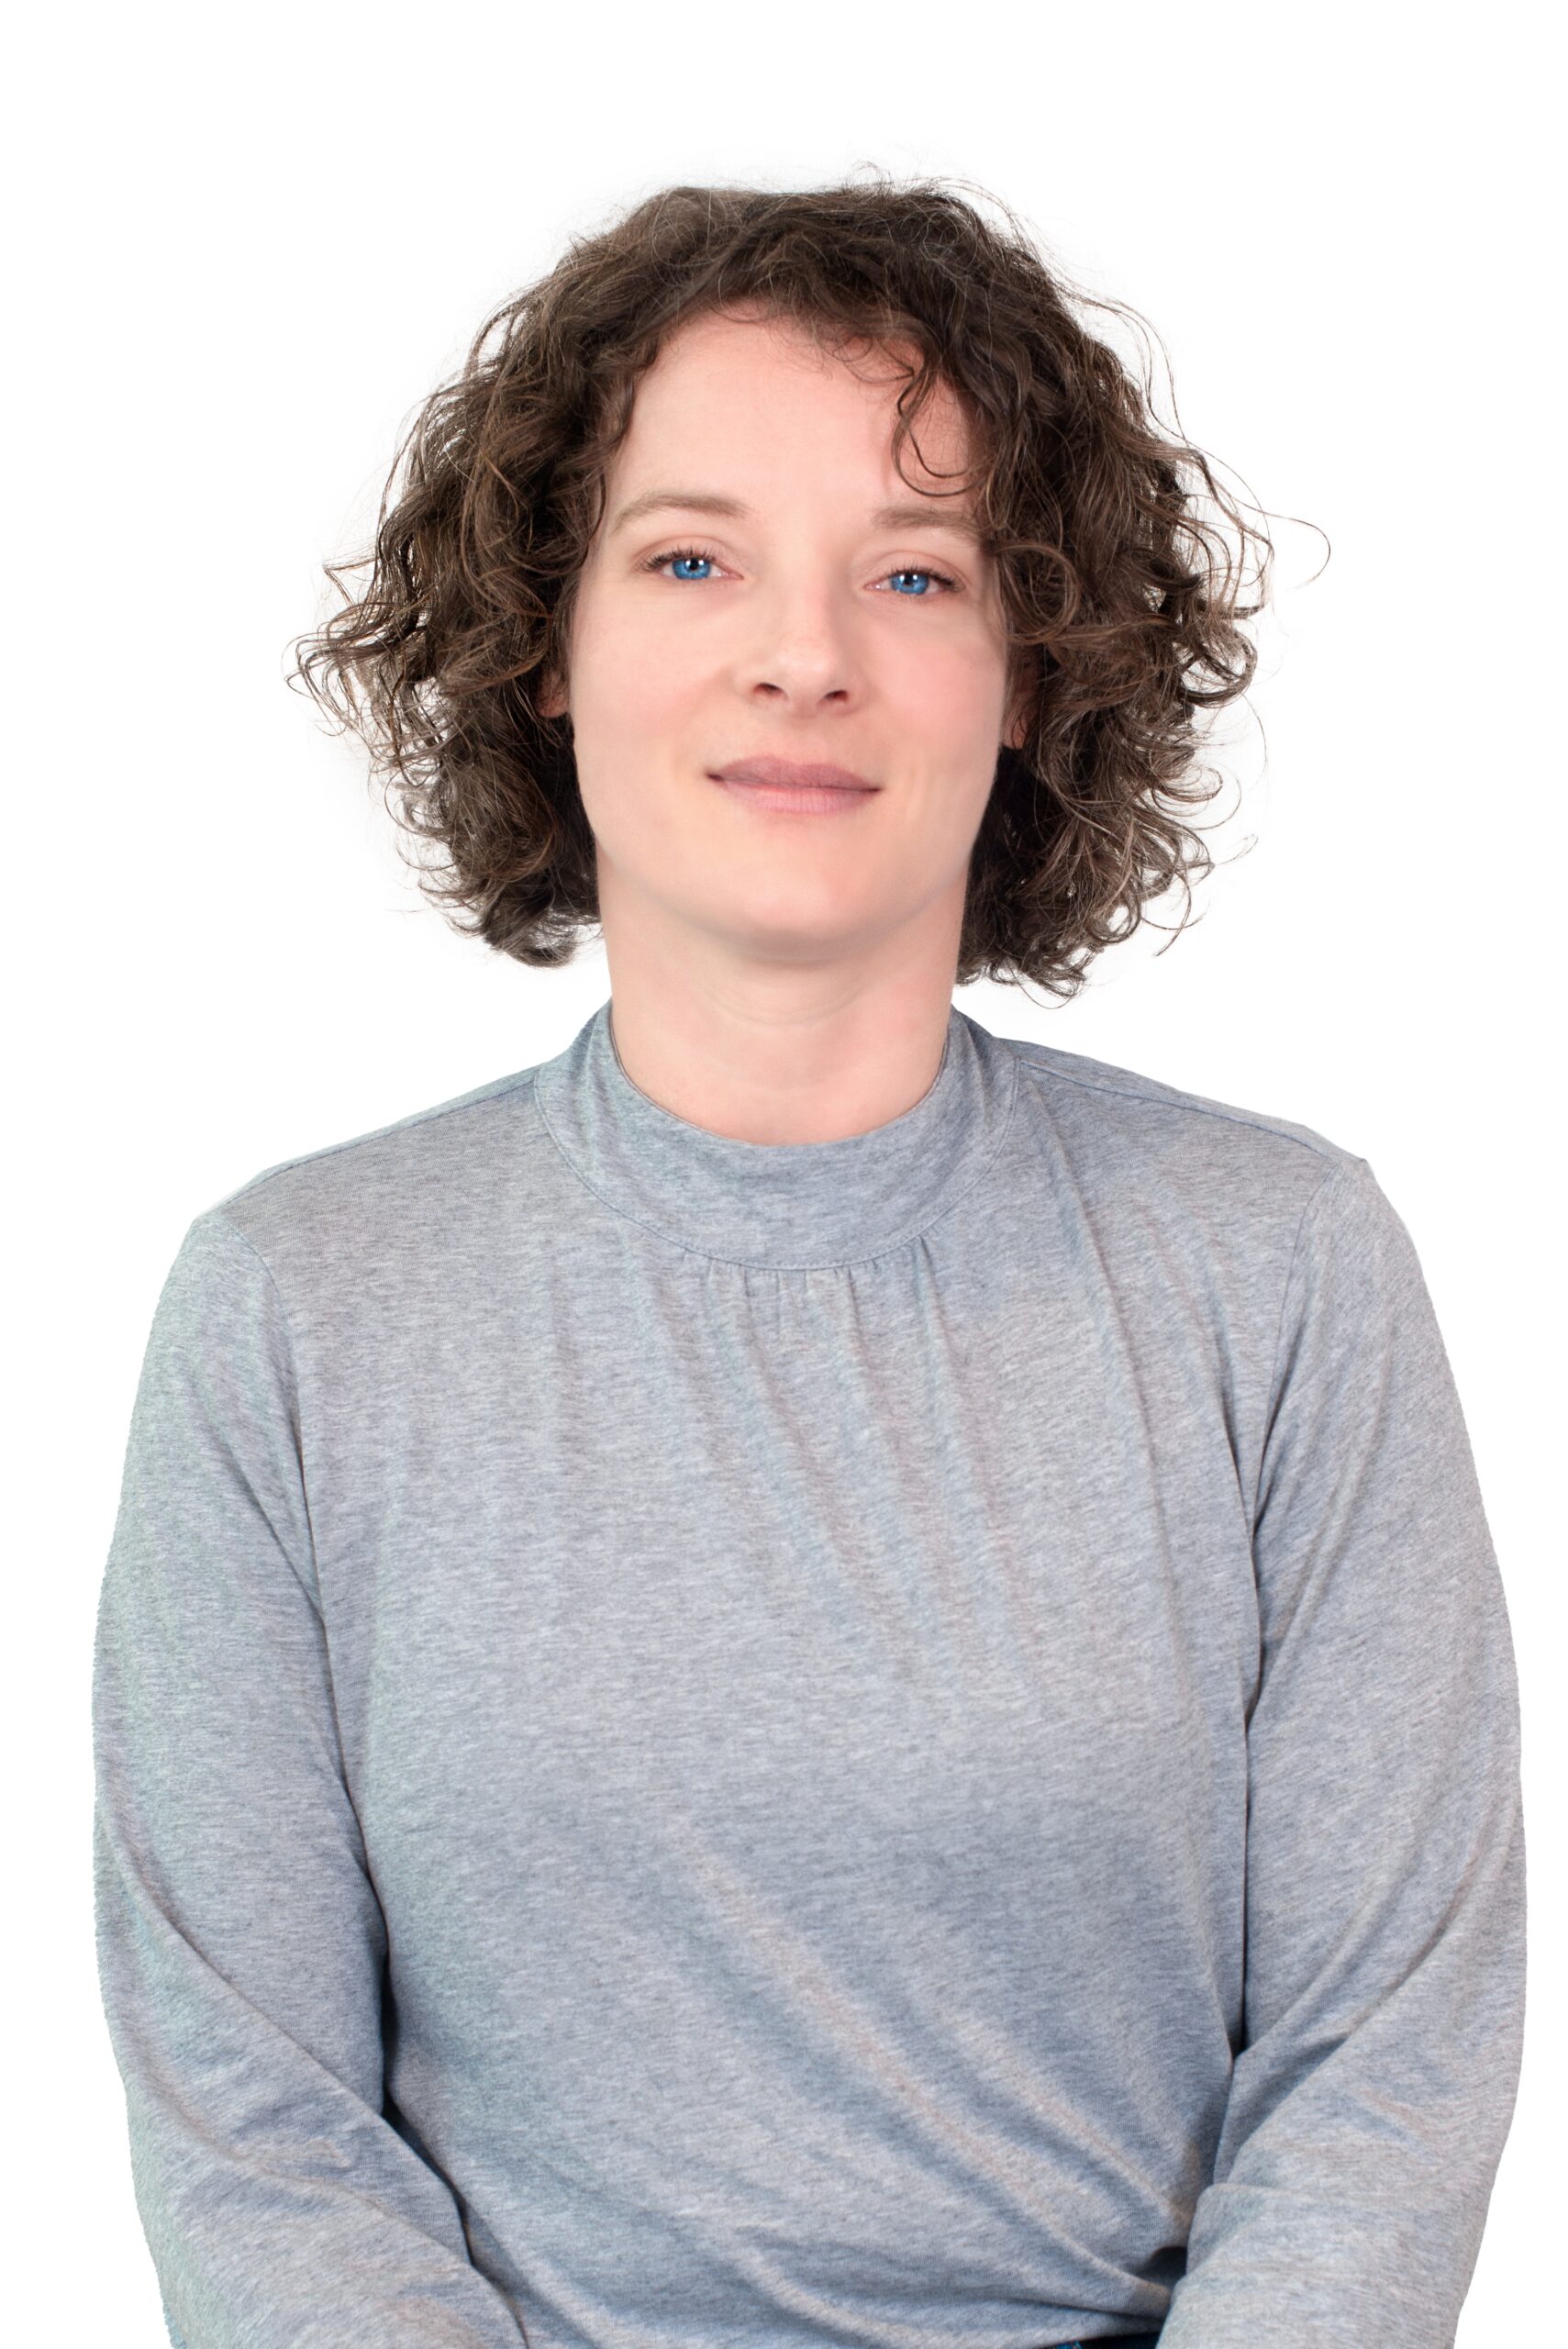 Marieke Aarts, principal Scientist at Bi/ond